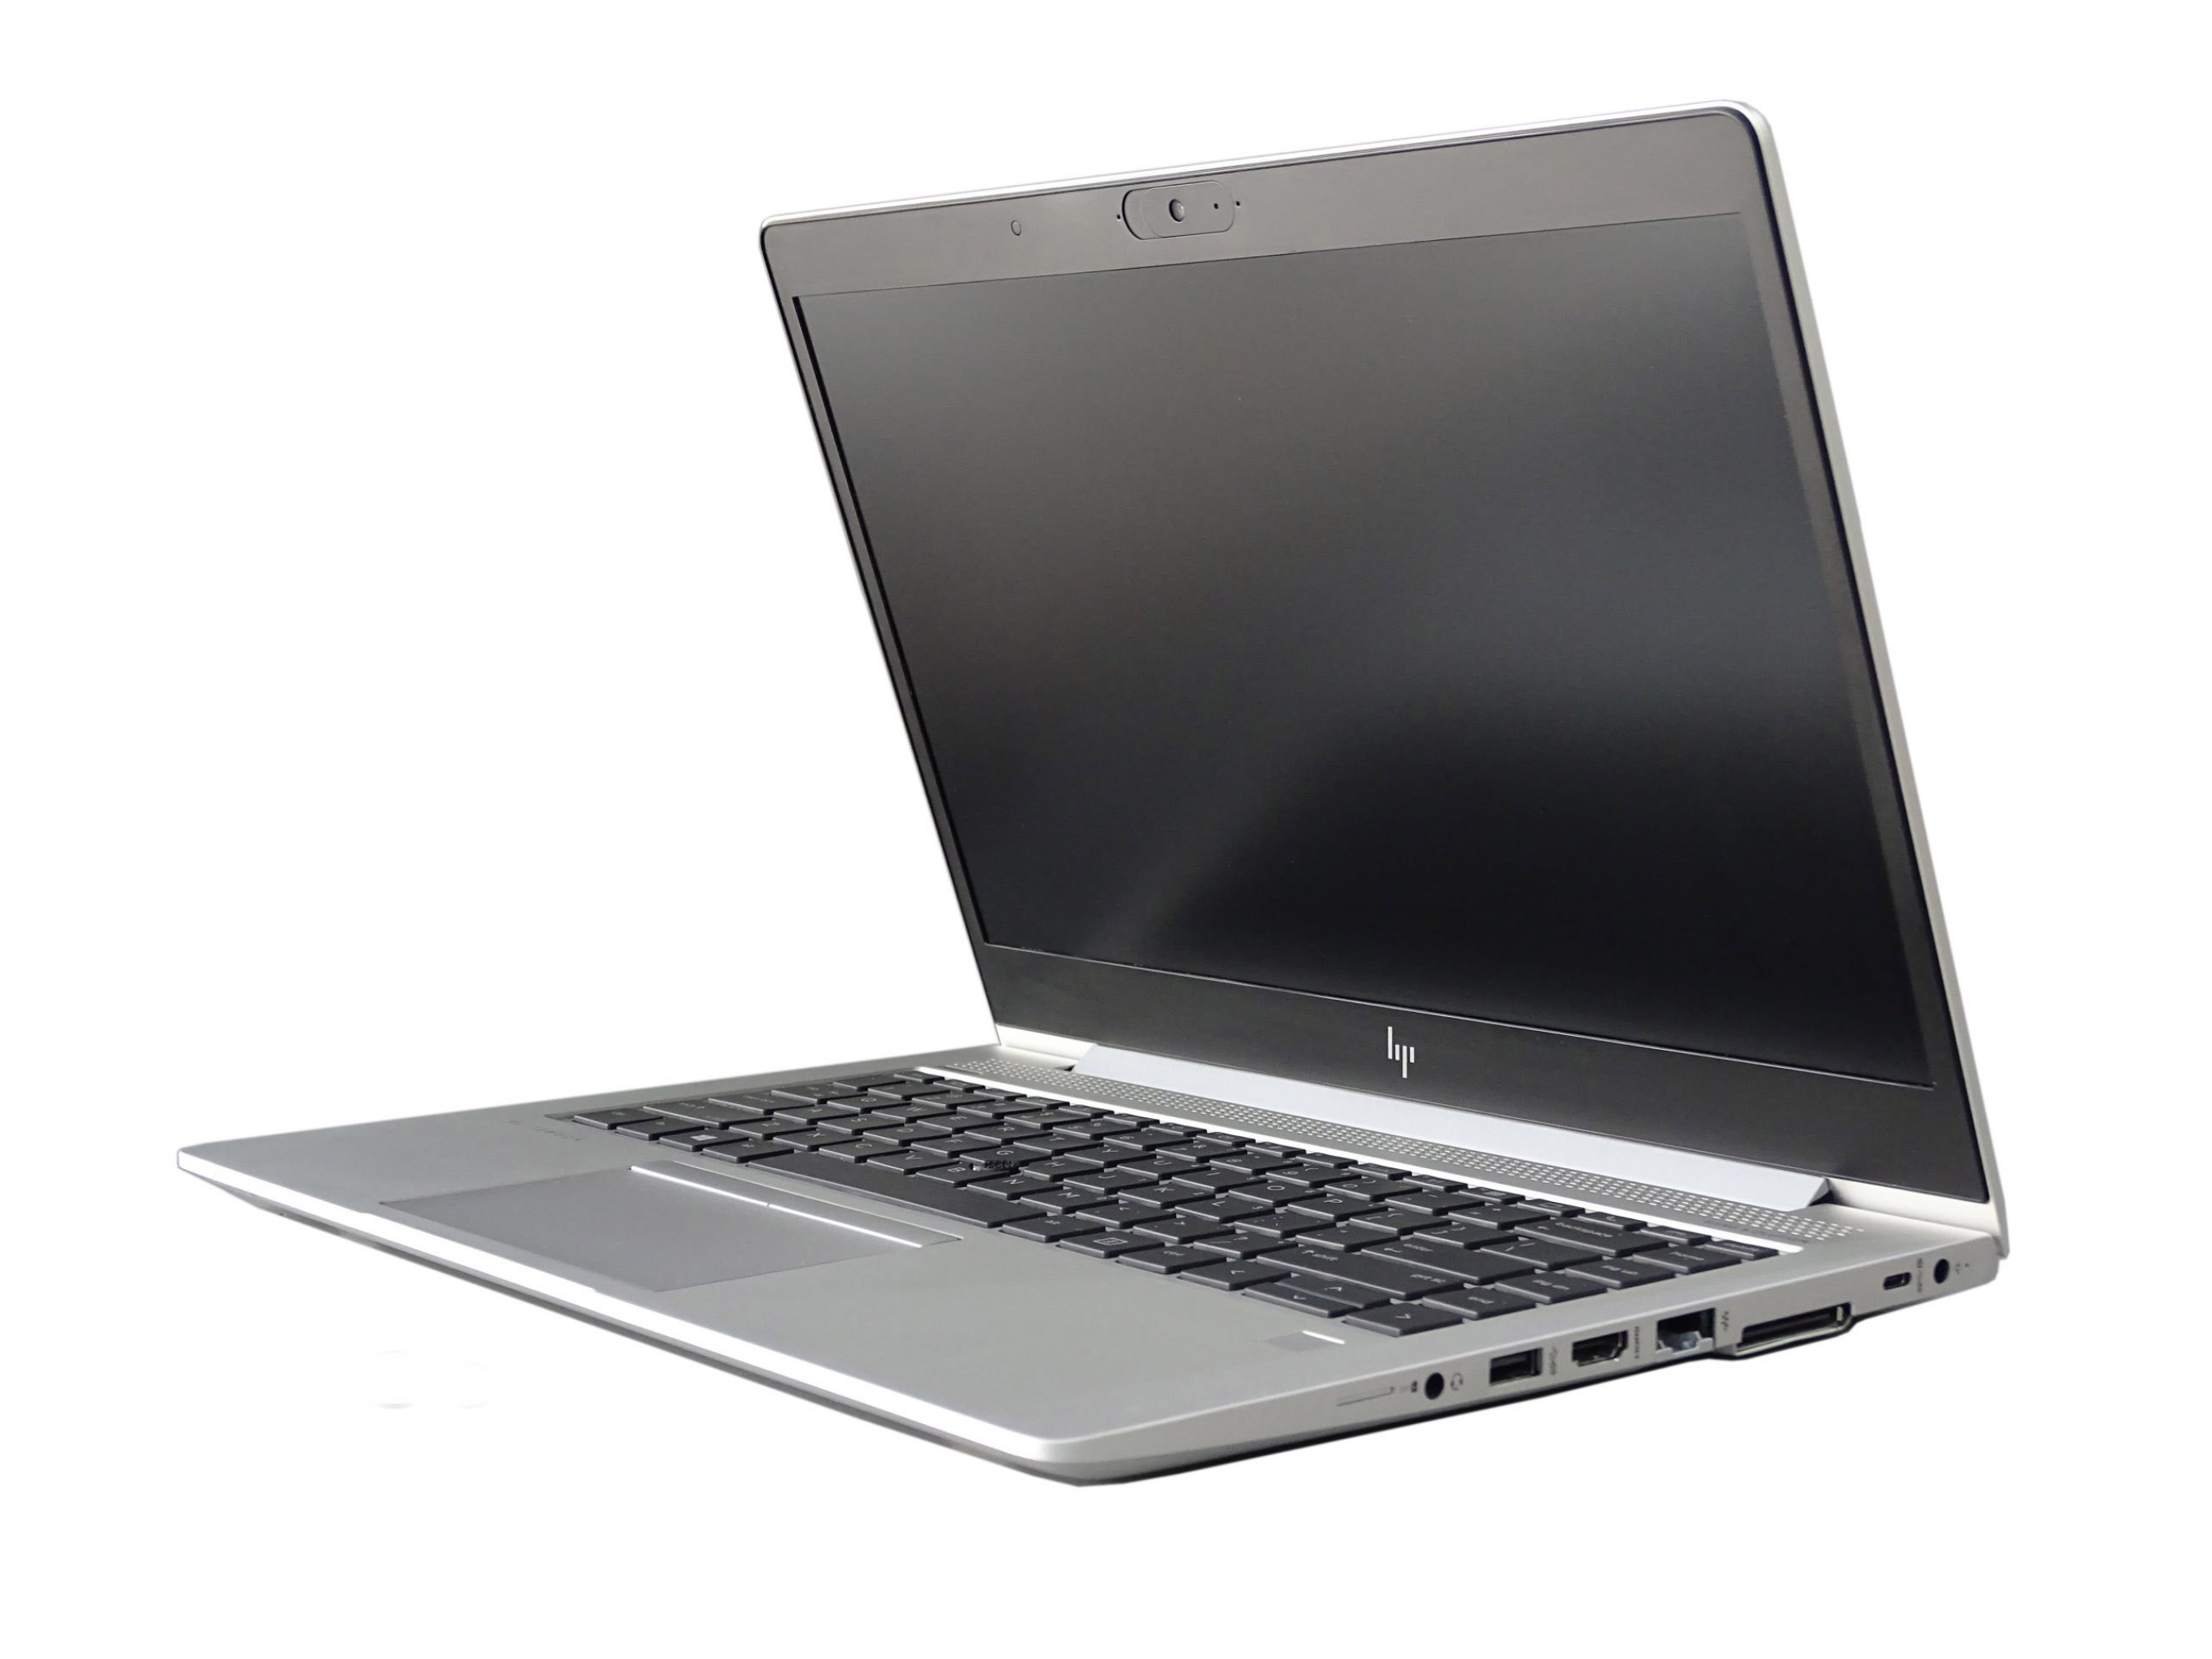  قیمت لپ تاپ HP EliteBook 745 G5 با پردازنده رایزن | لاکچری لپ تاپ 